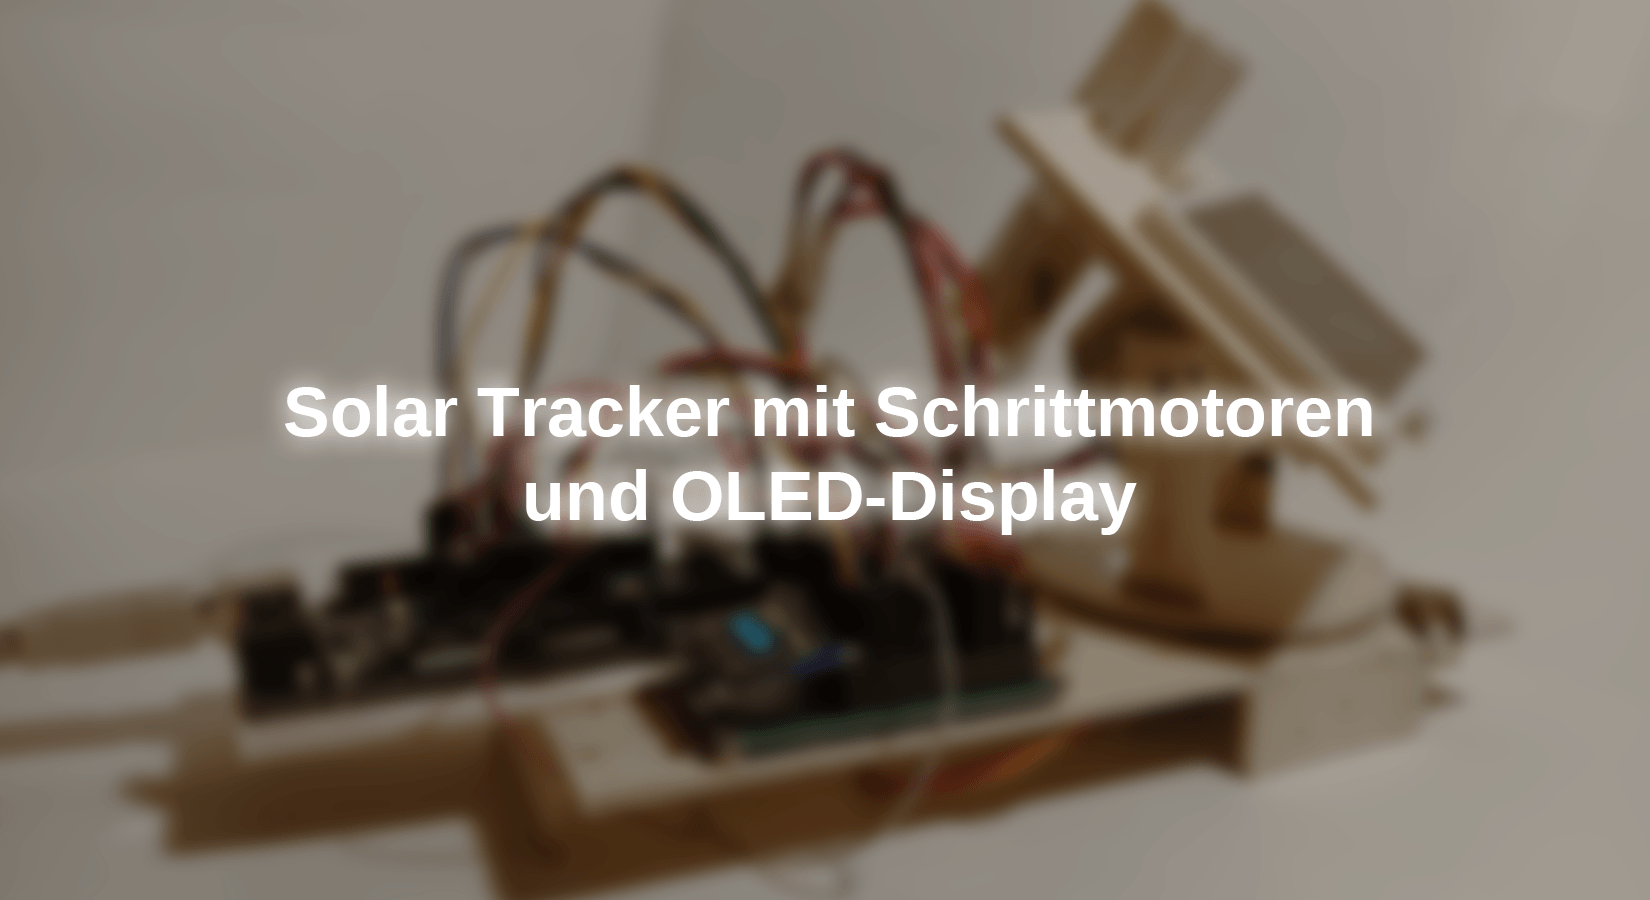 Solar Tracker mit Schrittmotoren und OLED-Display - AZ-Delivery